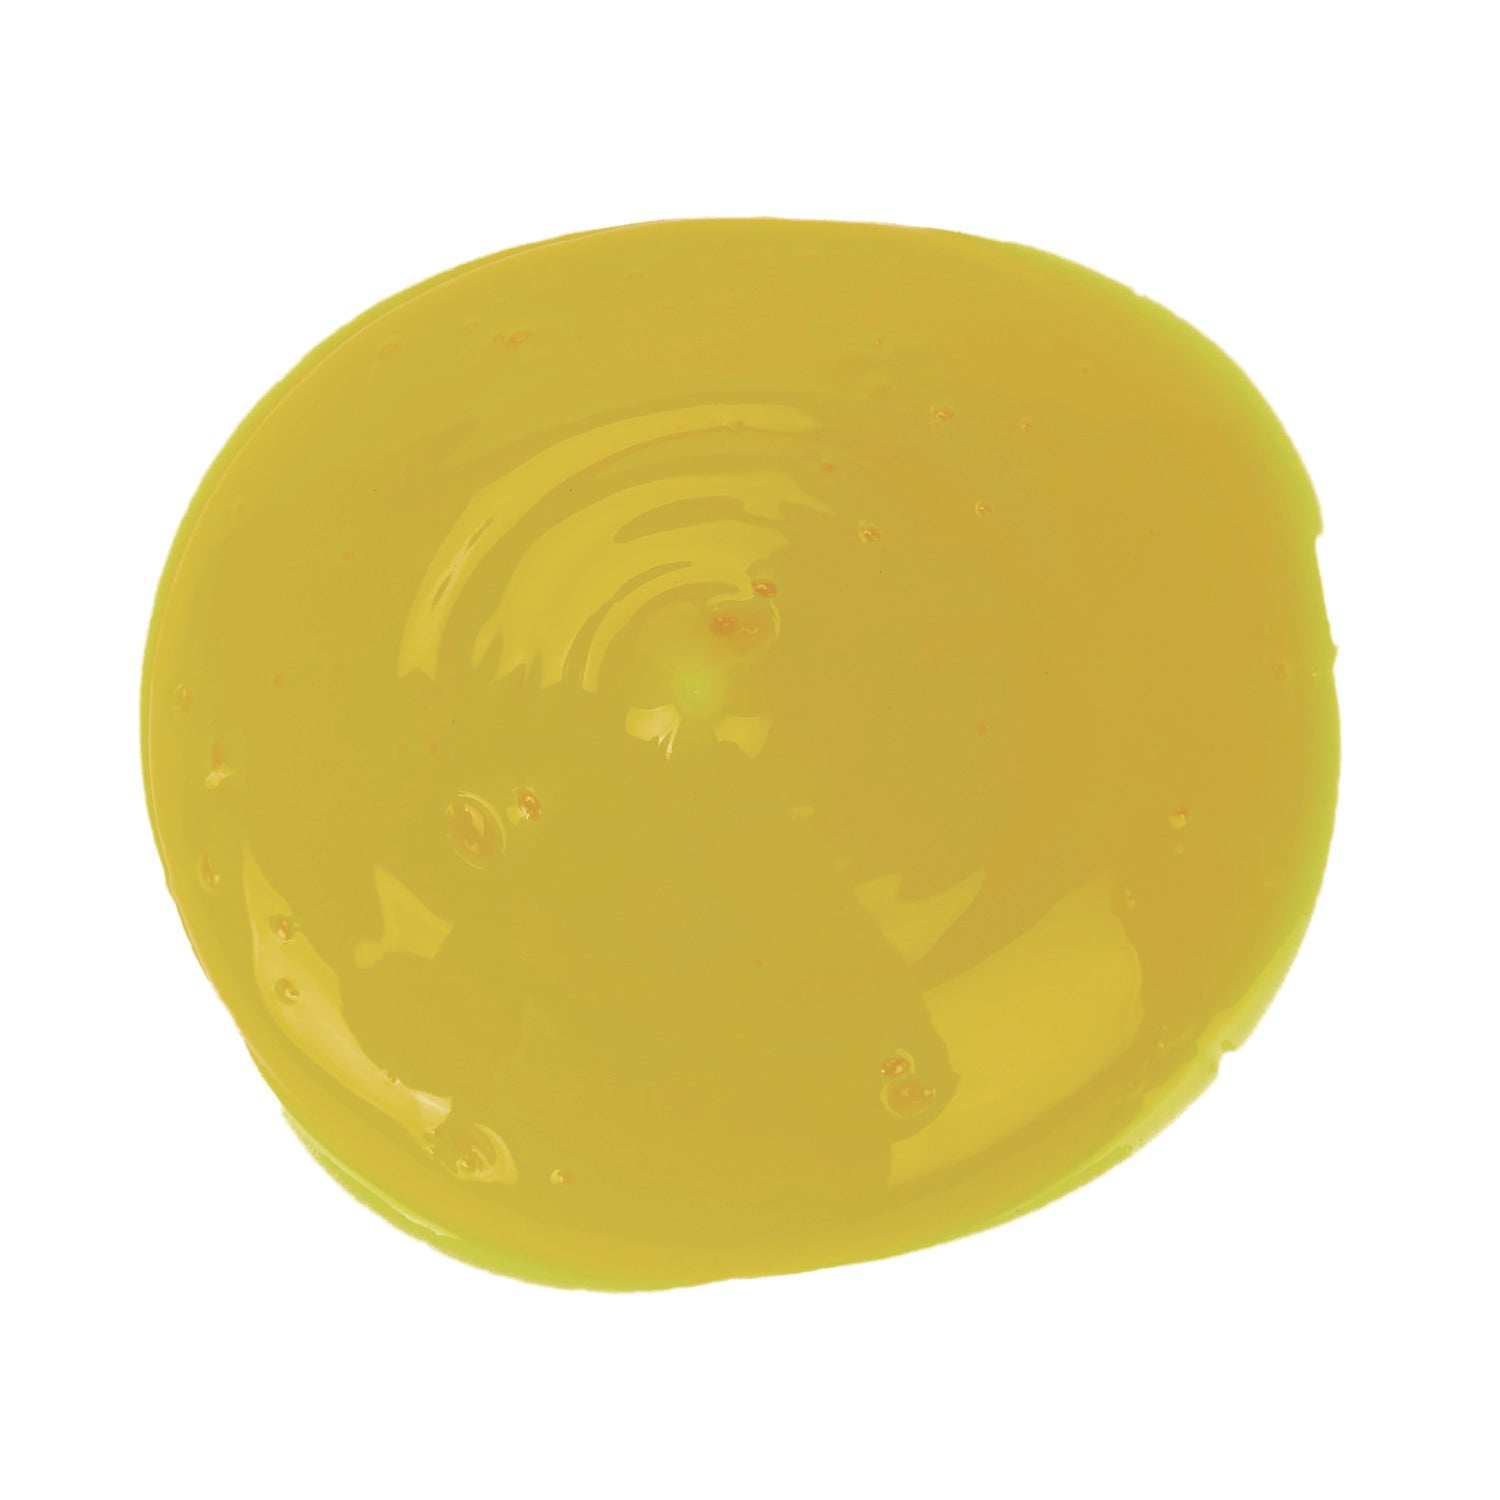 Washable Fingerpaint, Yellow, 16 oz Bottle - 